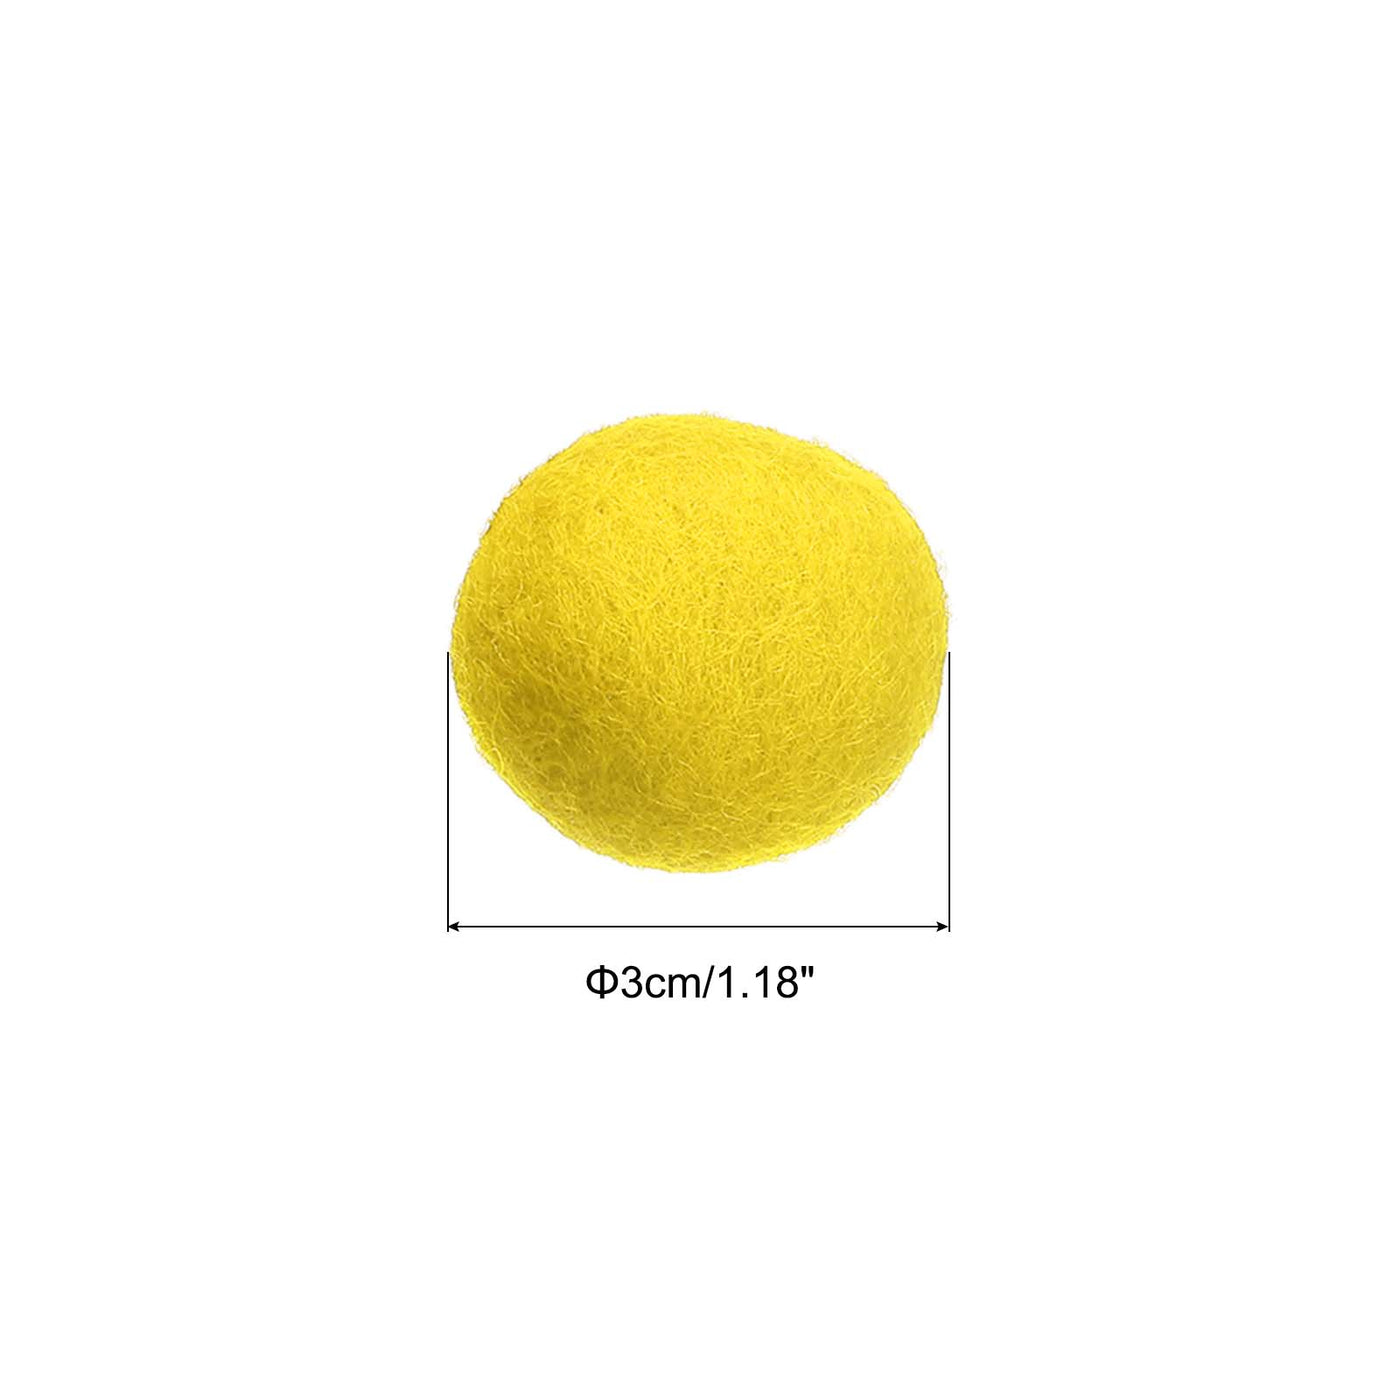 Harfington Wool Felt Balls Beads Woolen Fabric 3cm 30mm Yellow for Home Crafts 5Pcs